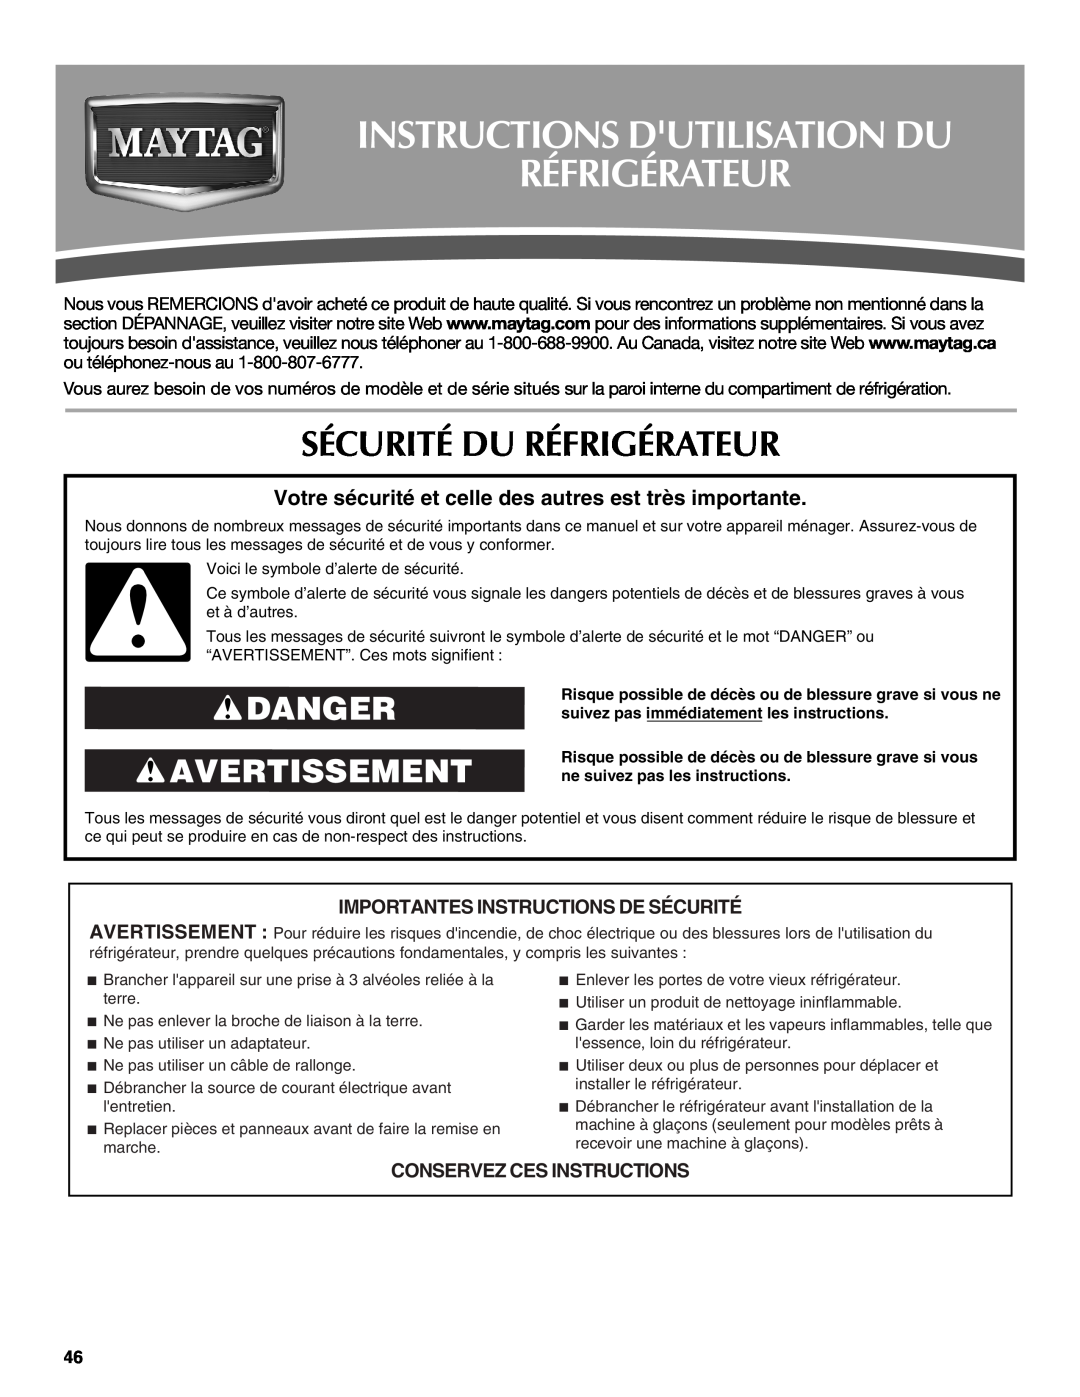 Maytag W10359302A Instructions Dutilisation Du Réfrigérateur, Sécurité Du Réfrigérateur, Danger Avertissement 